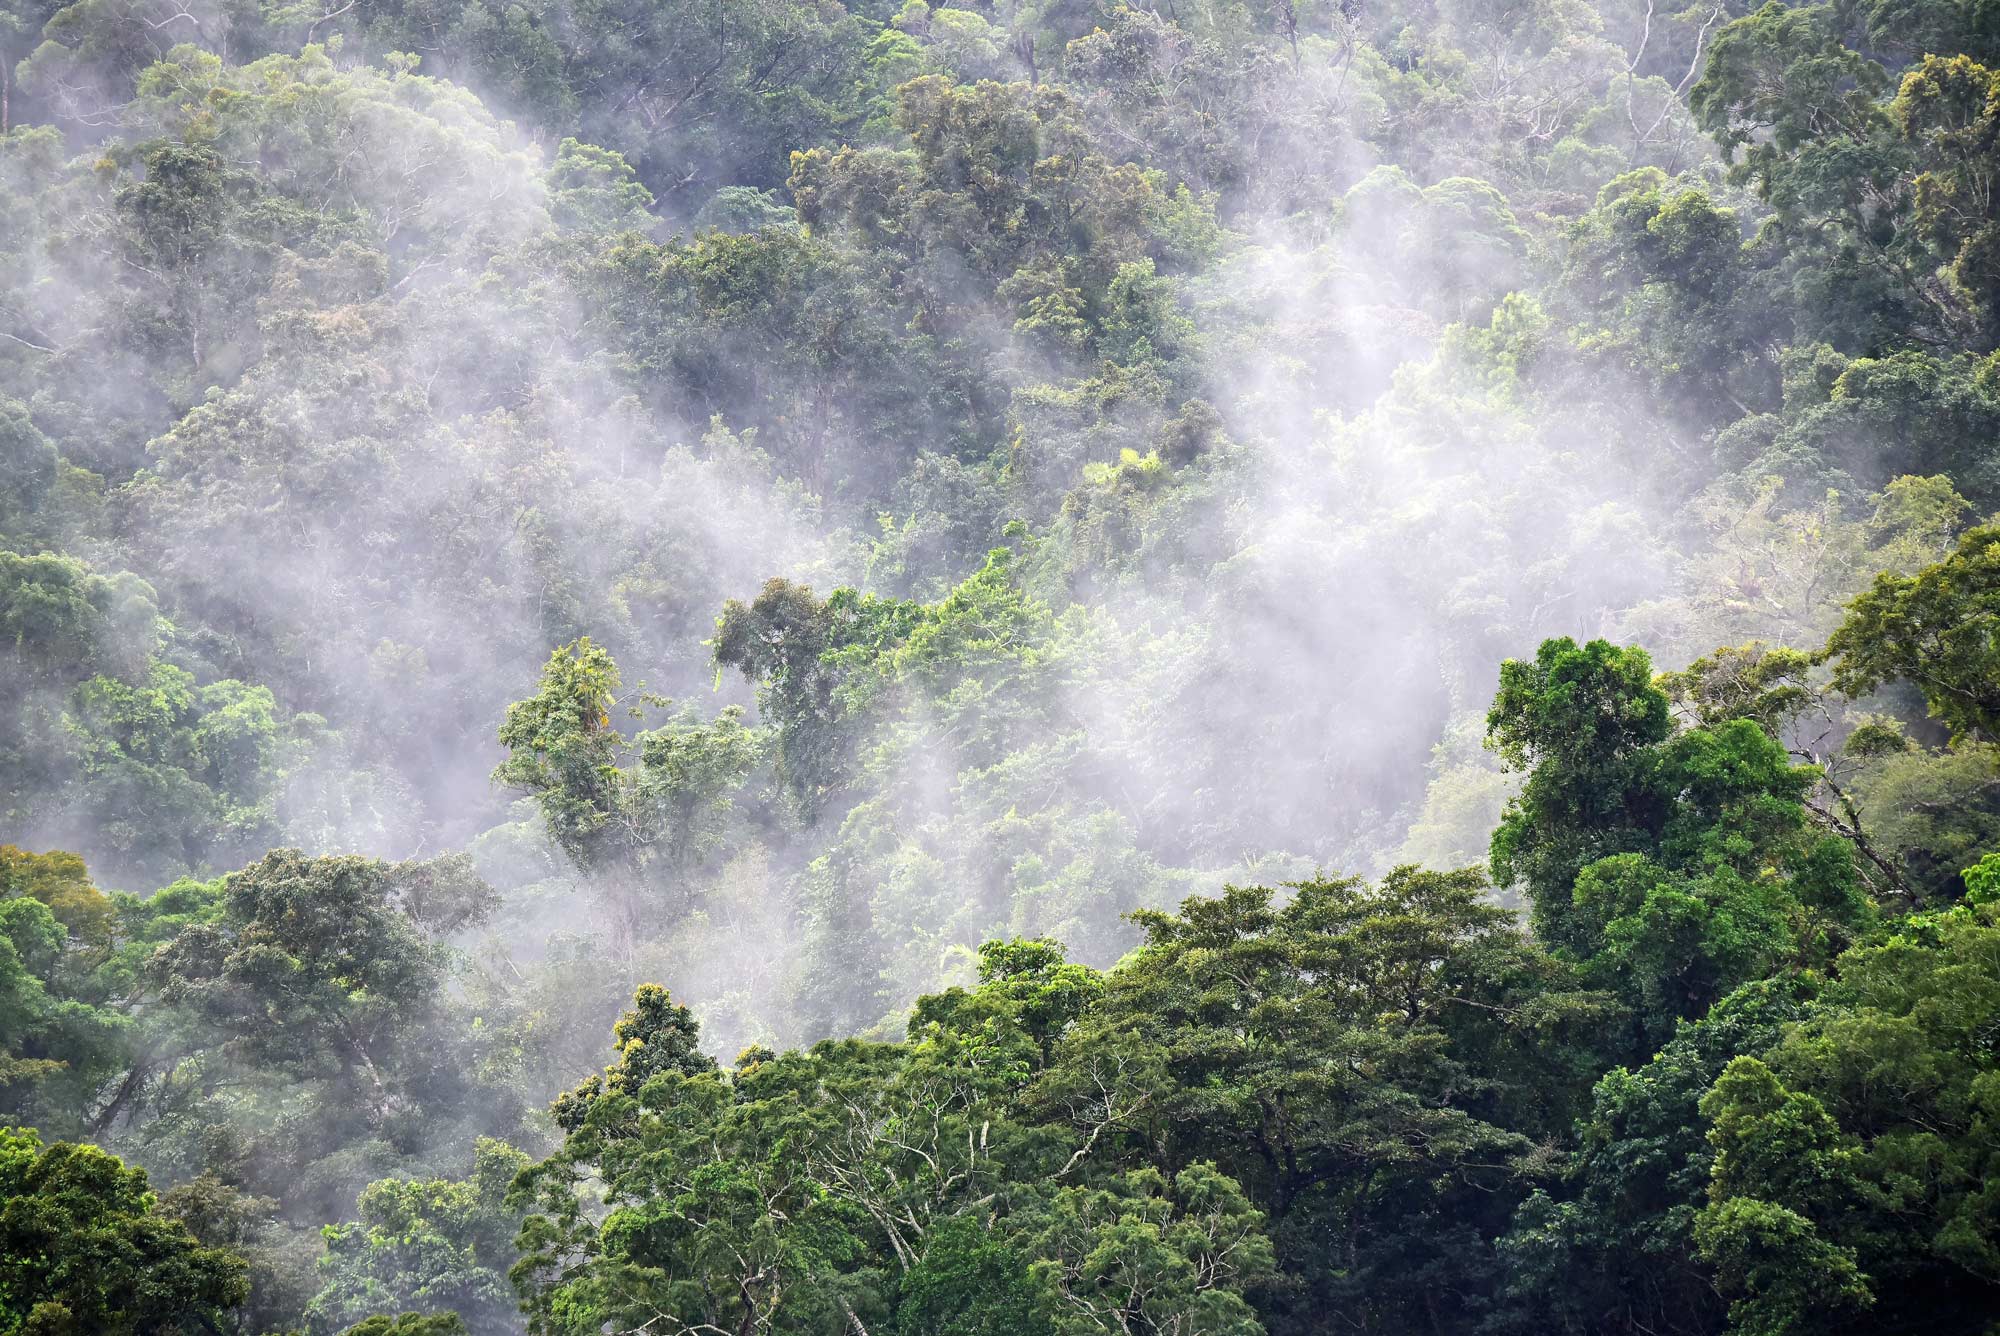 Umwelt-Projekt, Wald von Bali im Nebel, environmental project, POI